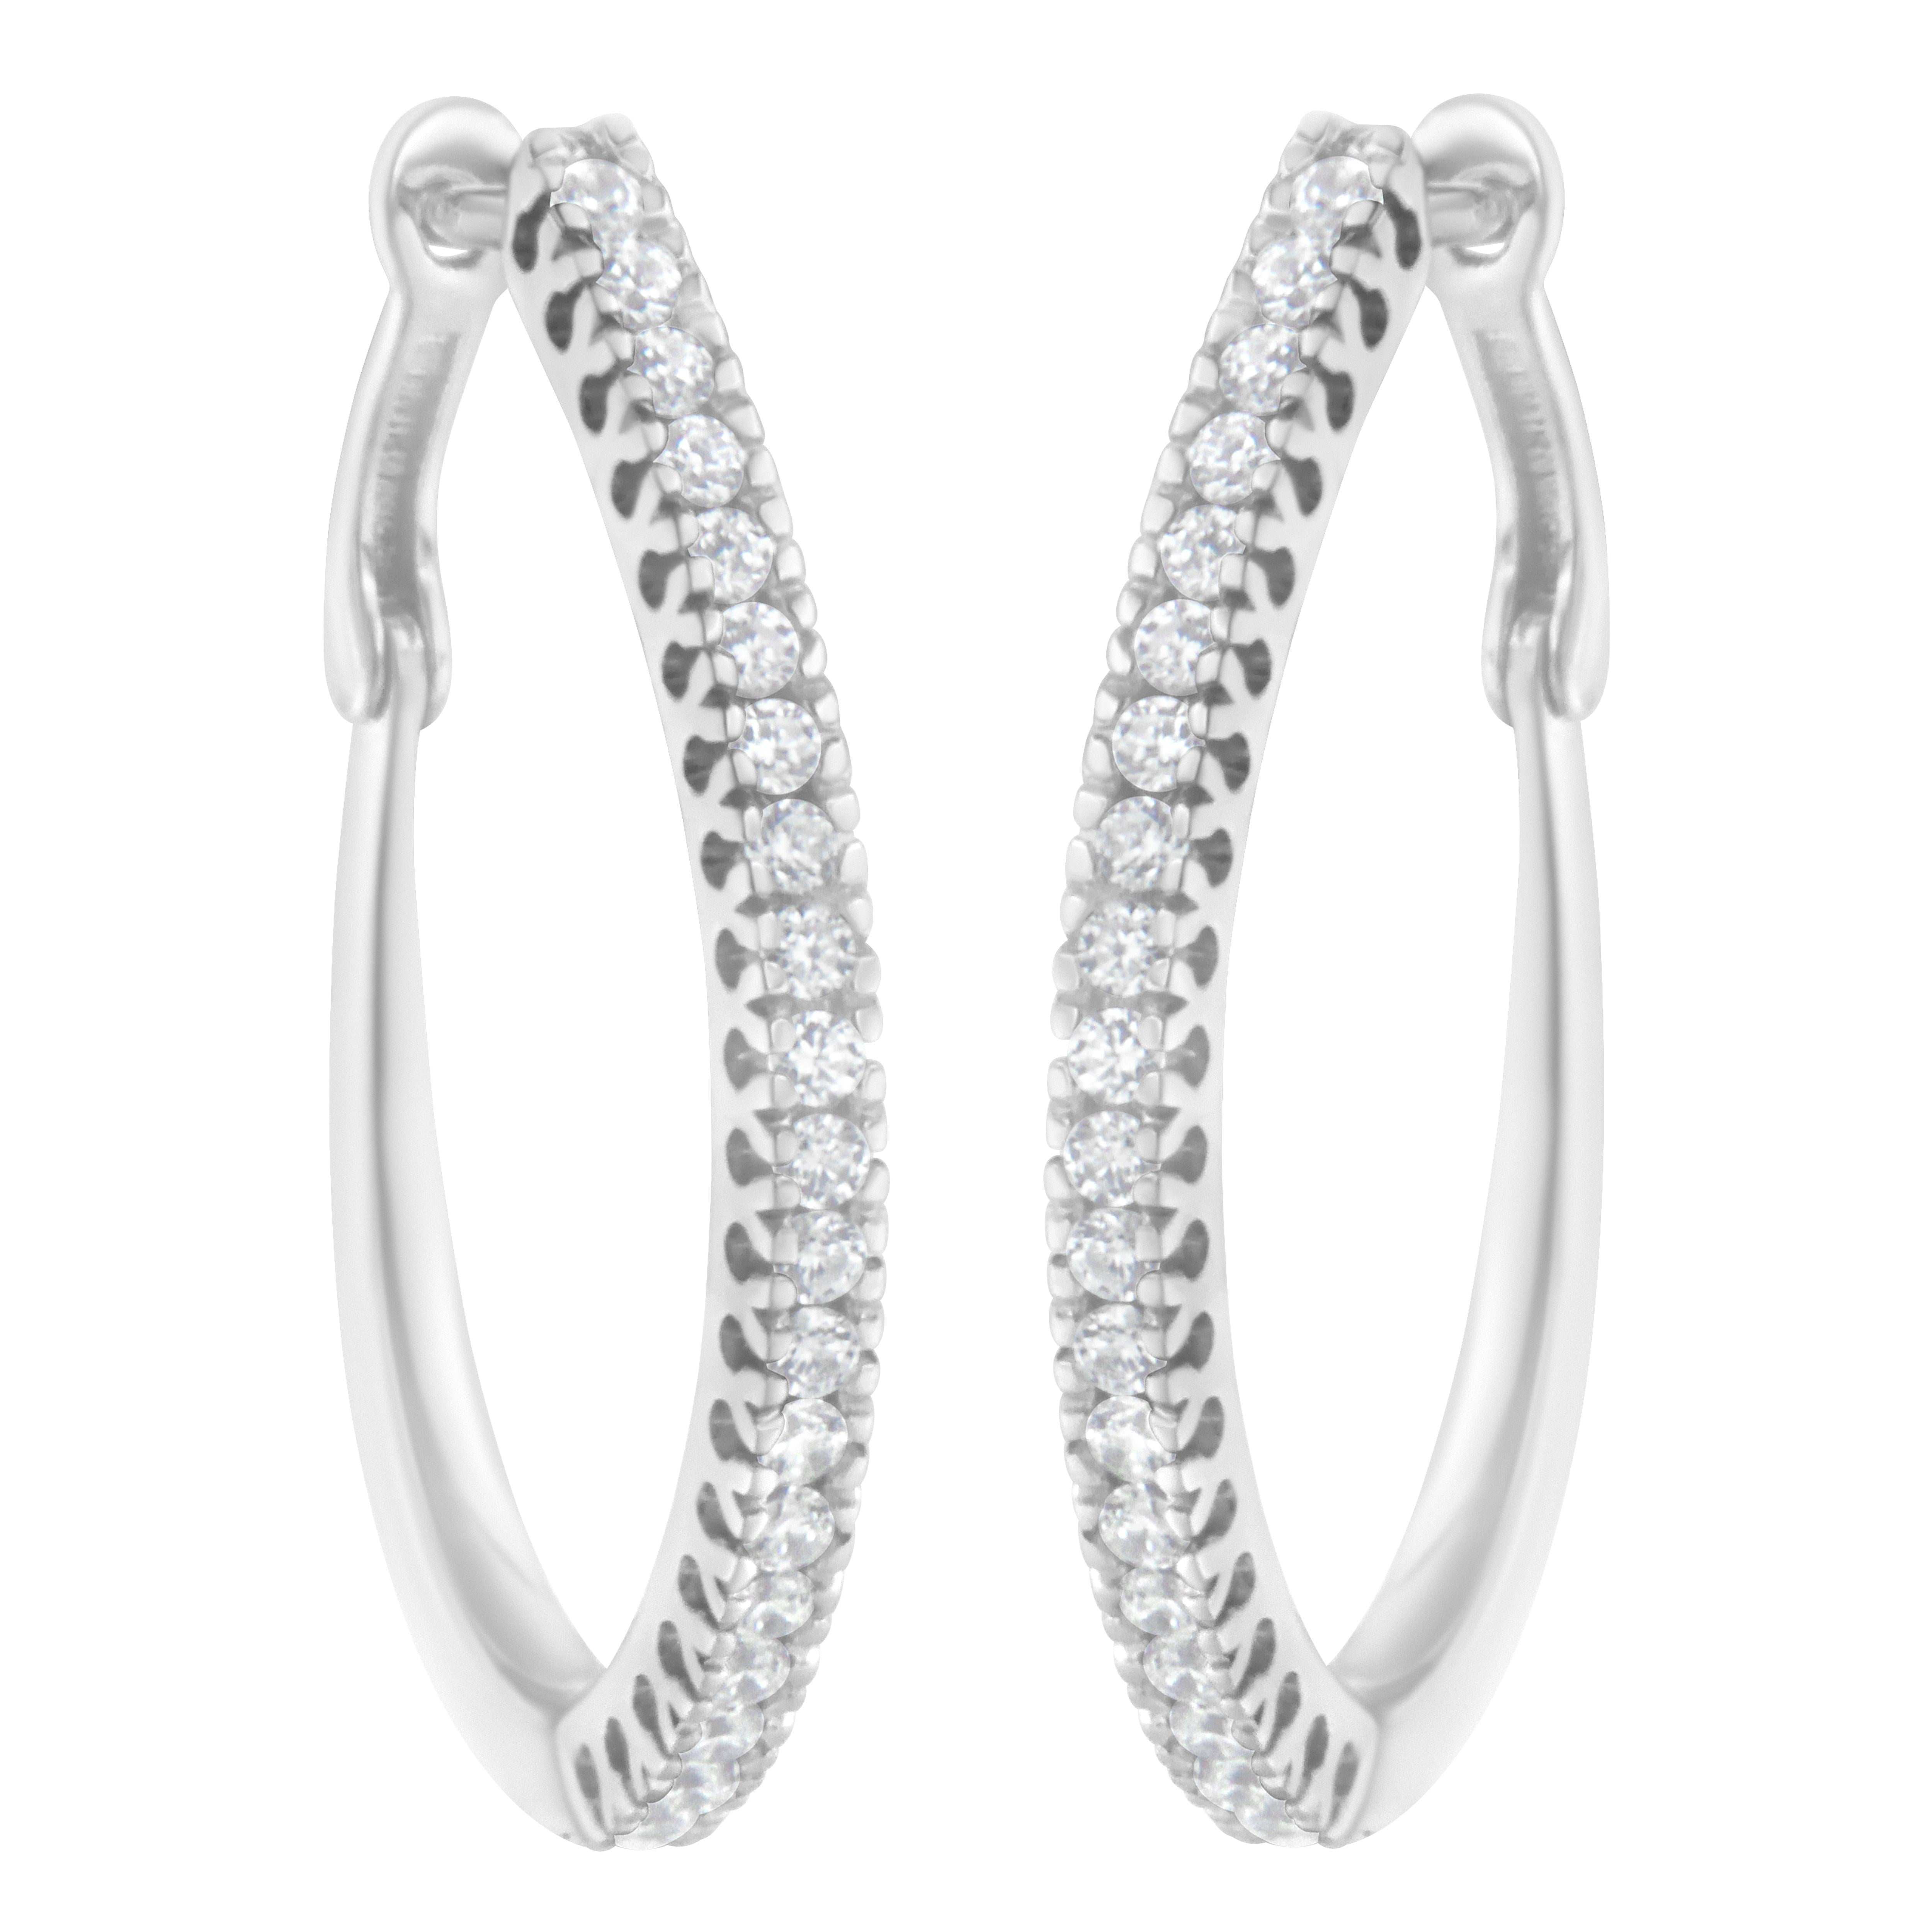 2 carat diamond hoop earrings price